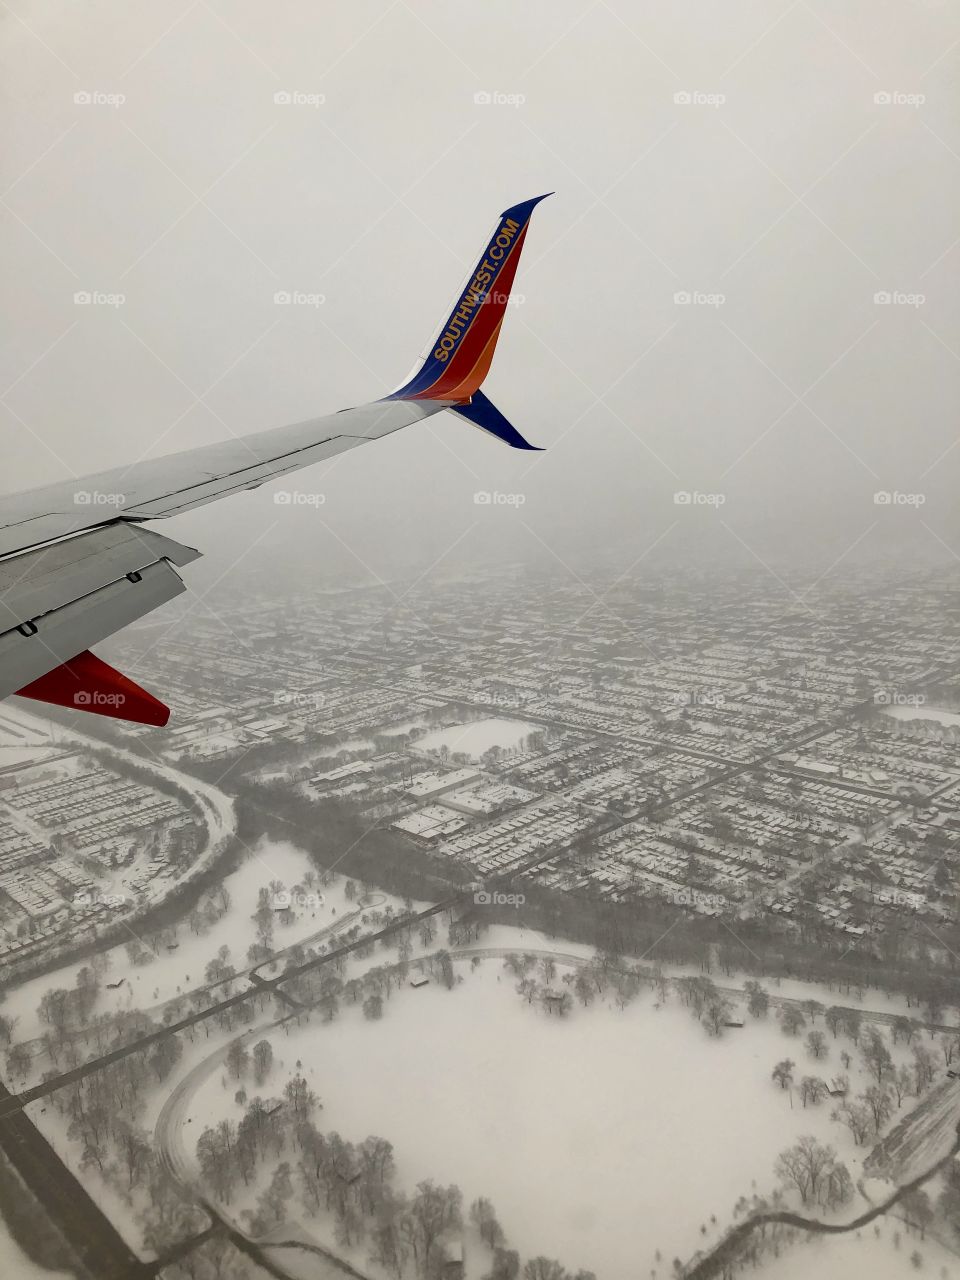 Flying in winter